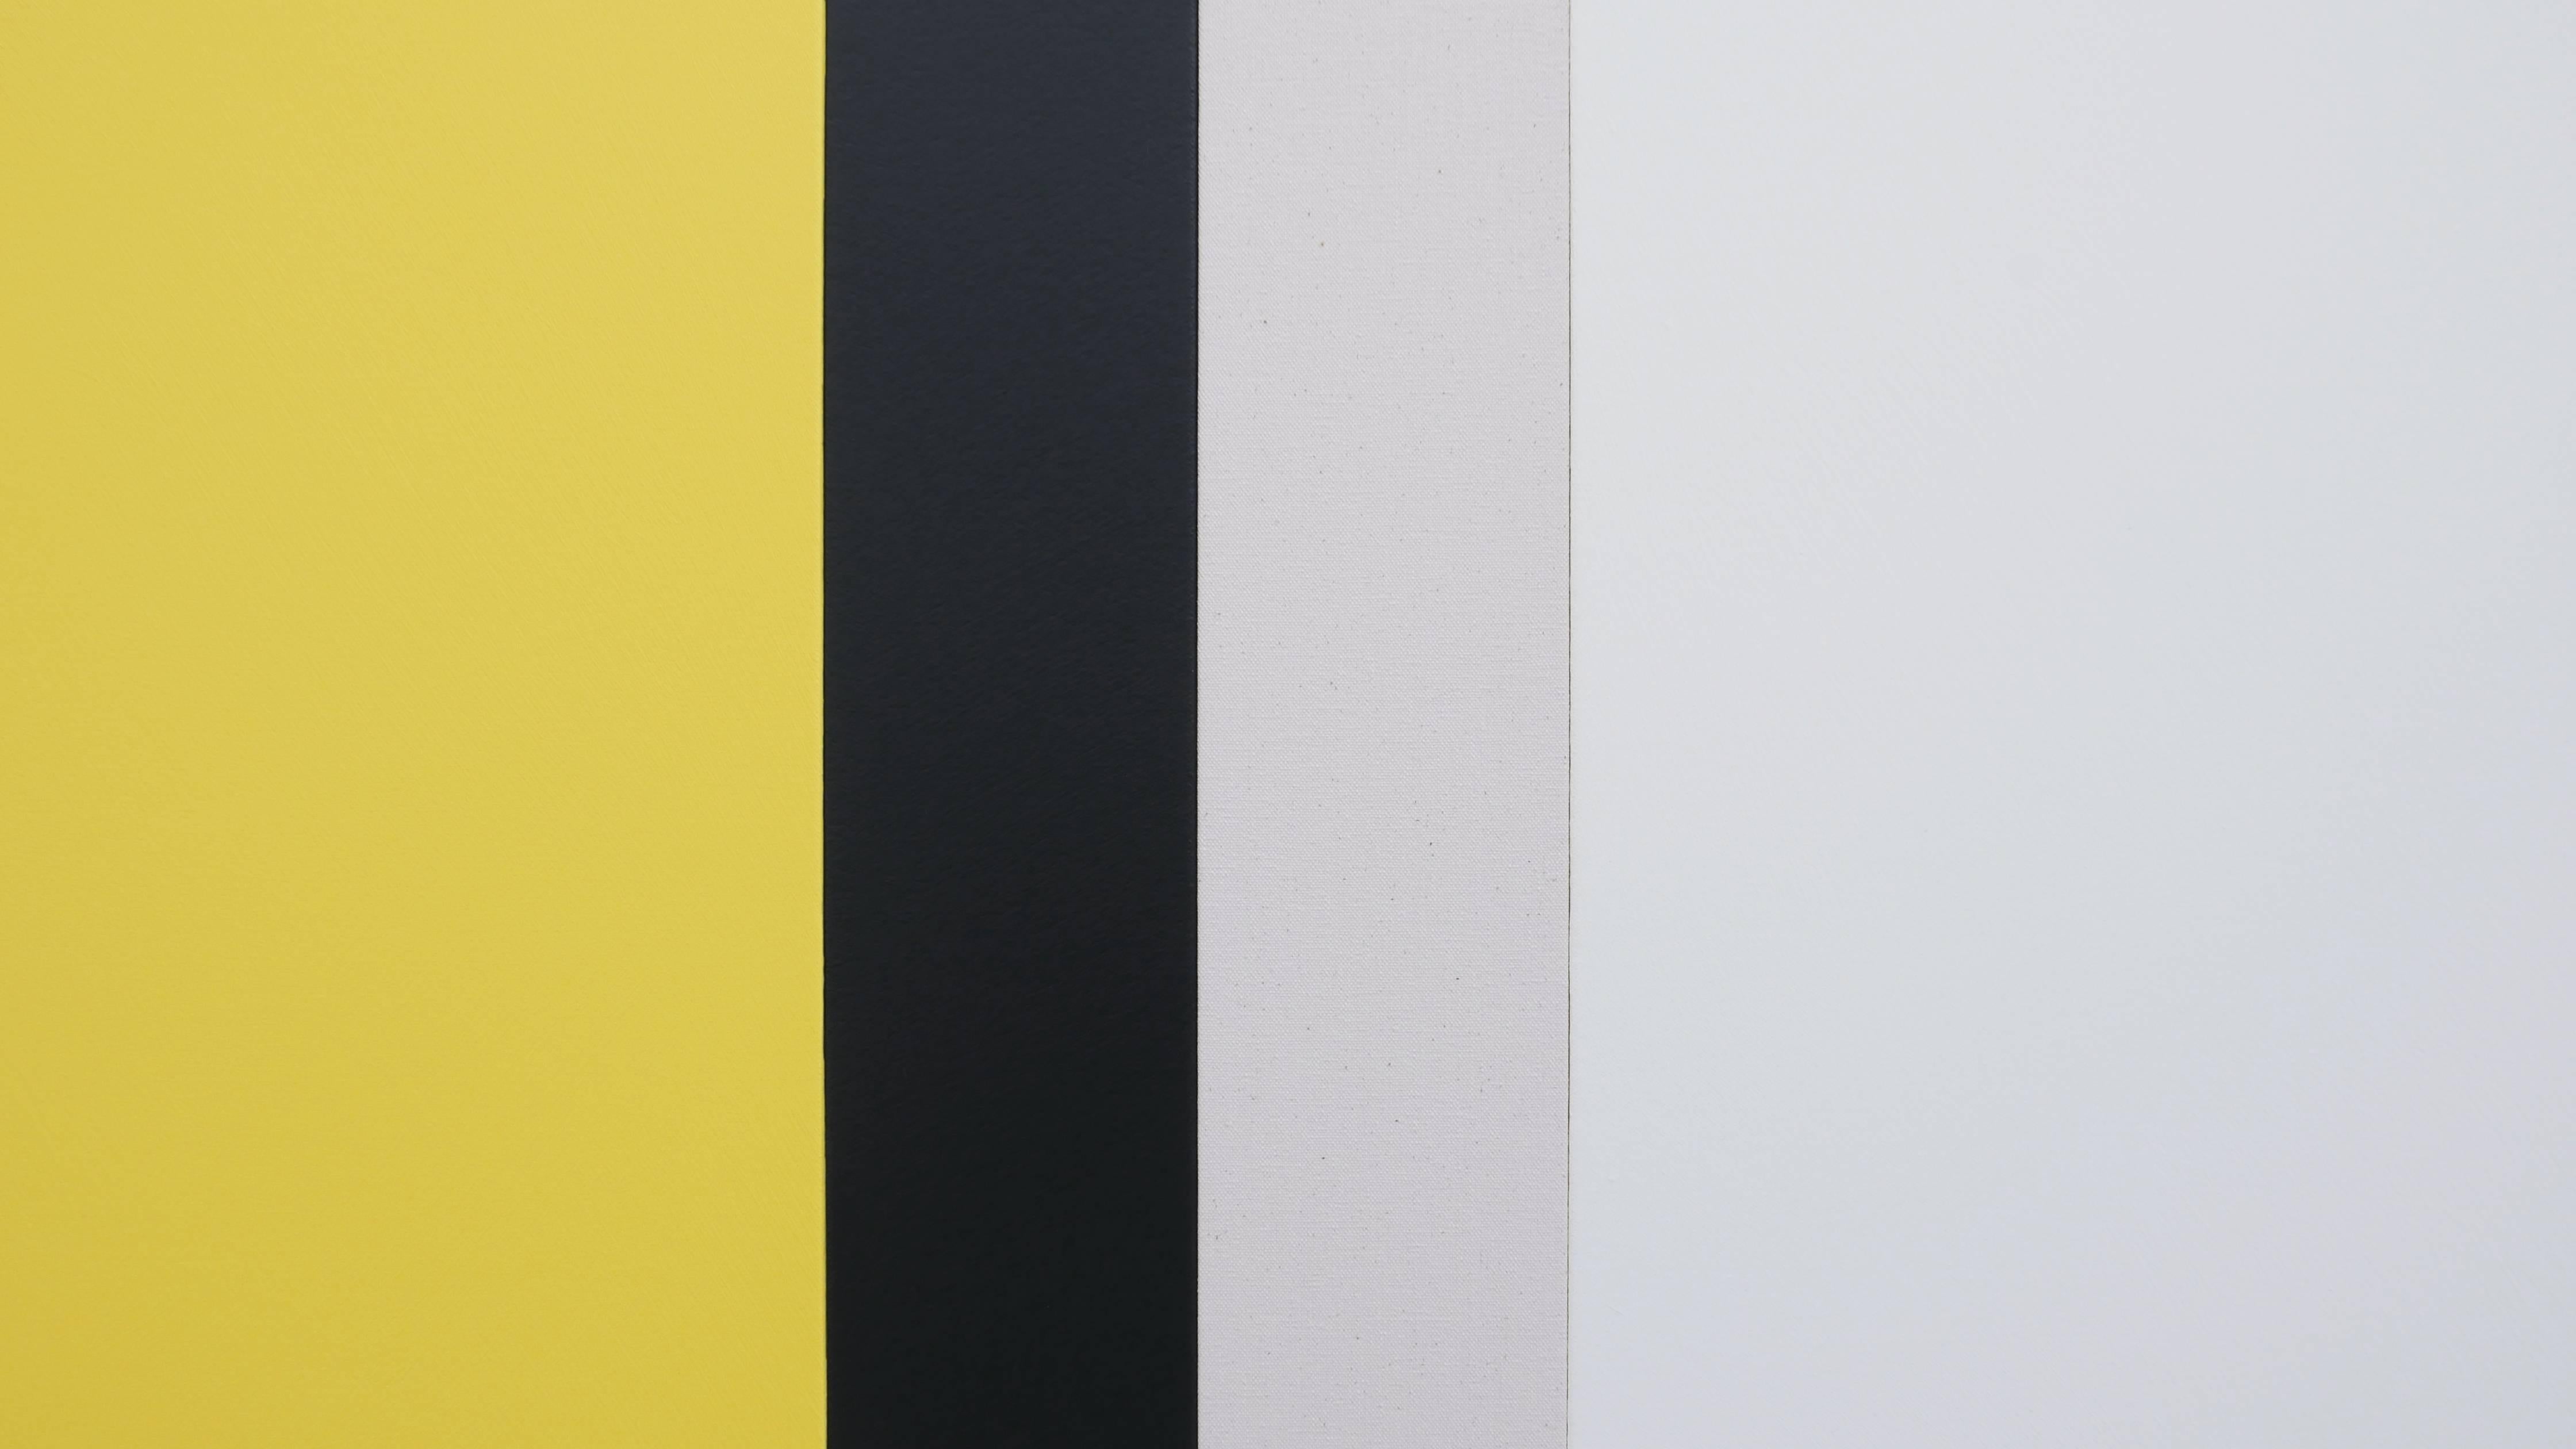 Sunyata - Gray, Yellow, White, Canvas - Painting by Scot Heywood